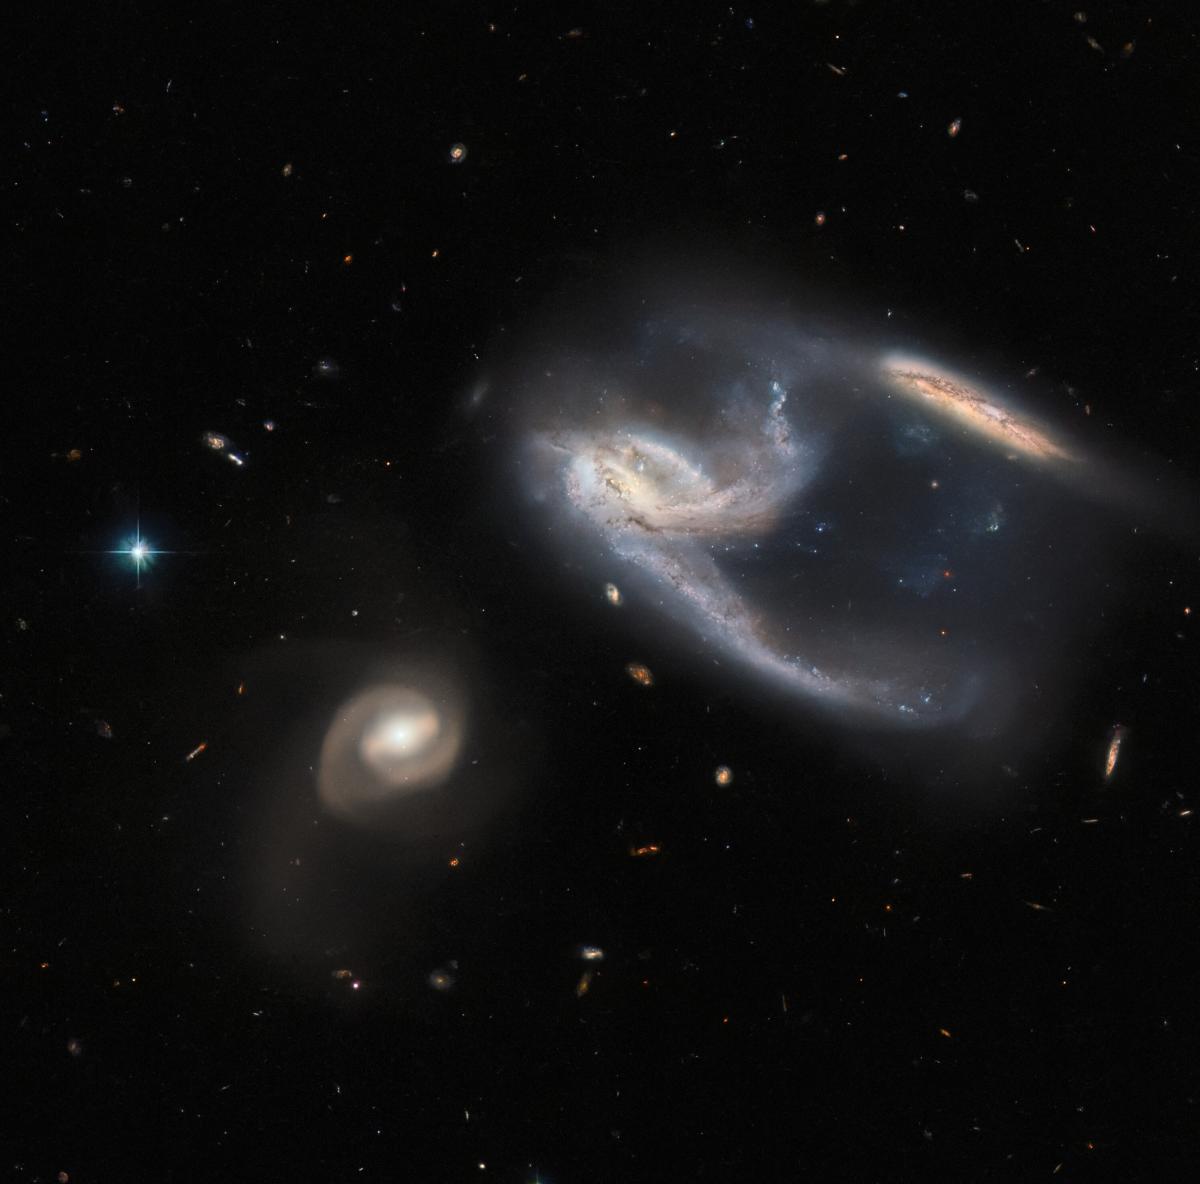 Группа галактик находится в созвездии Феникс / фото ESA/Hubble & NASA, J. Dalcanton, Dark Energy Survey, DOE, FNAL, DECam, CTIO, NOIRLab/NSF/AURA, ESO; J. Schmidt